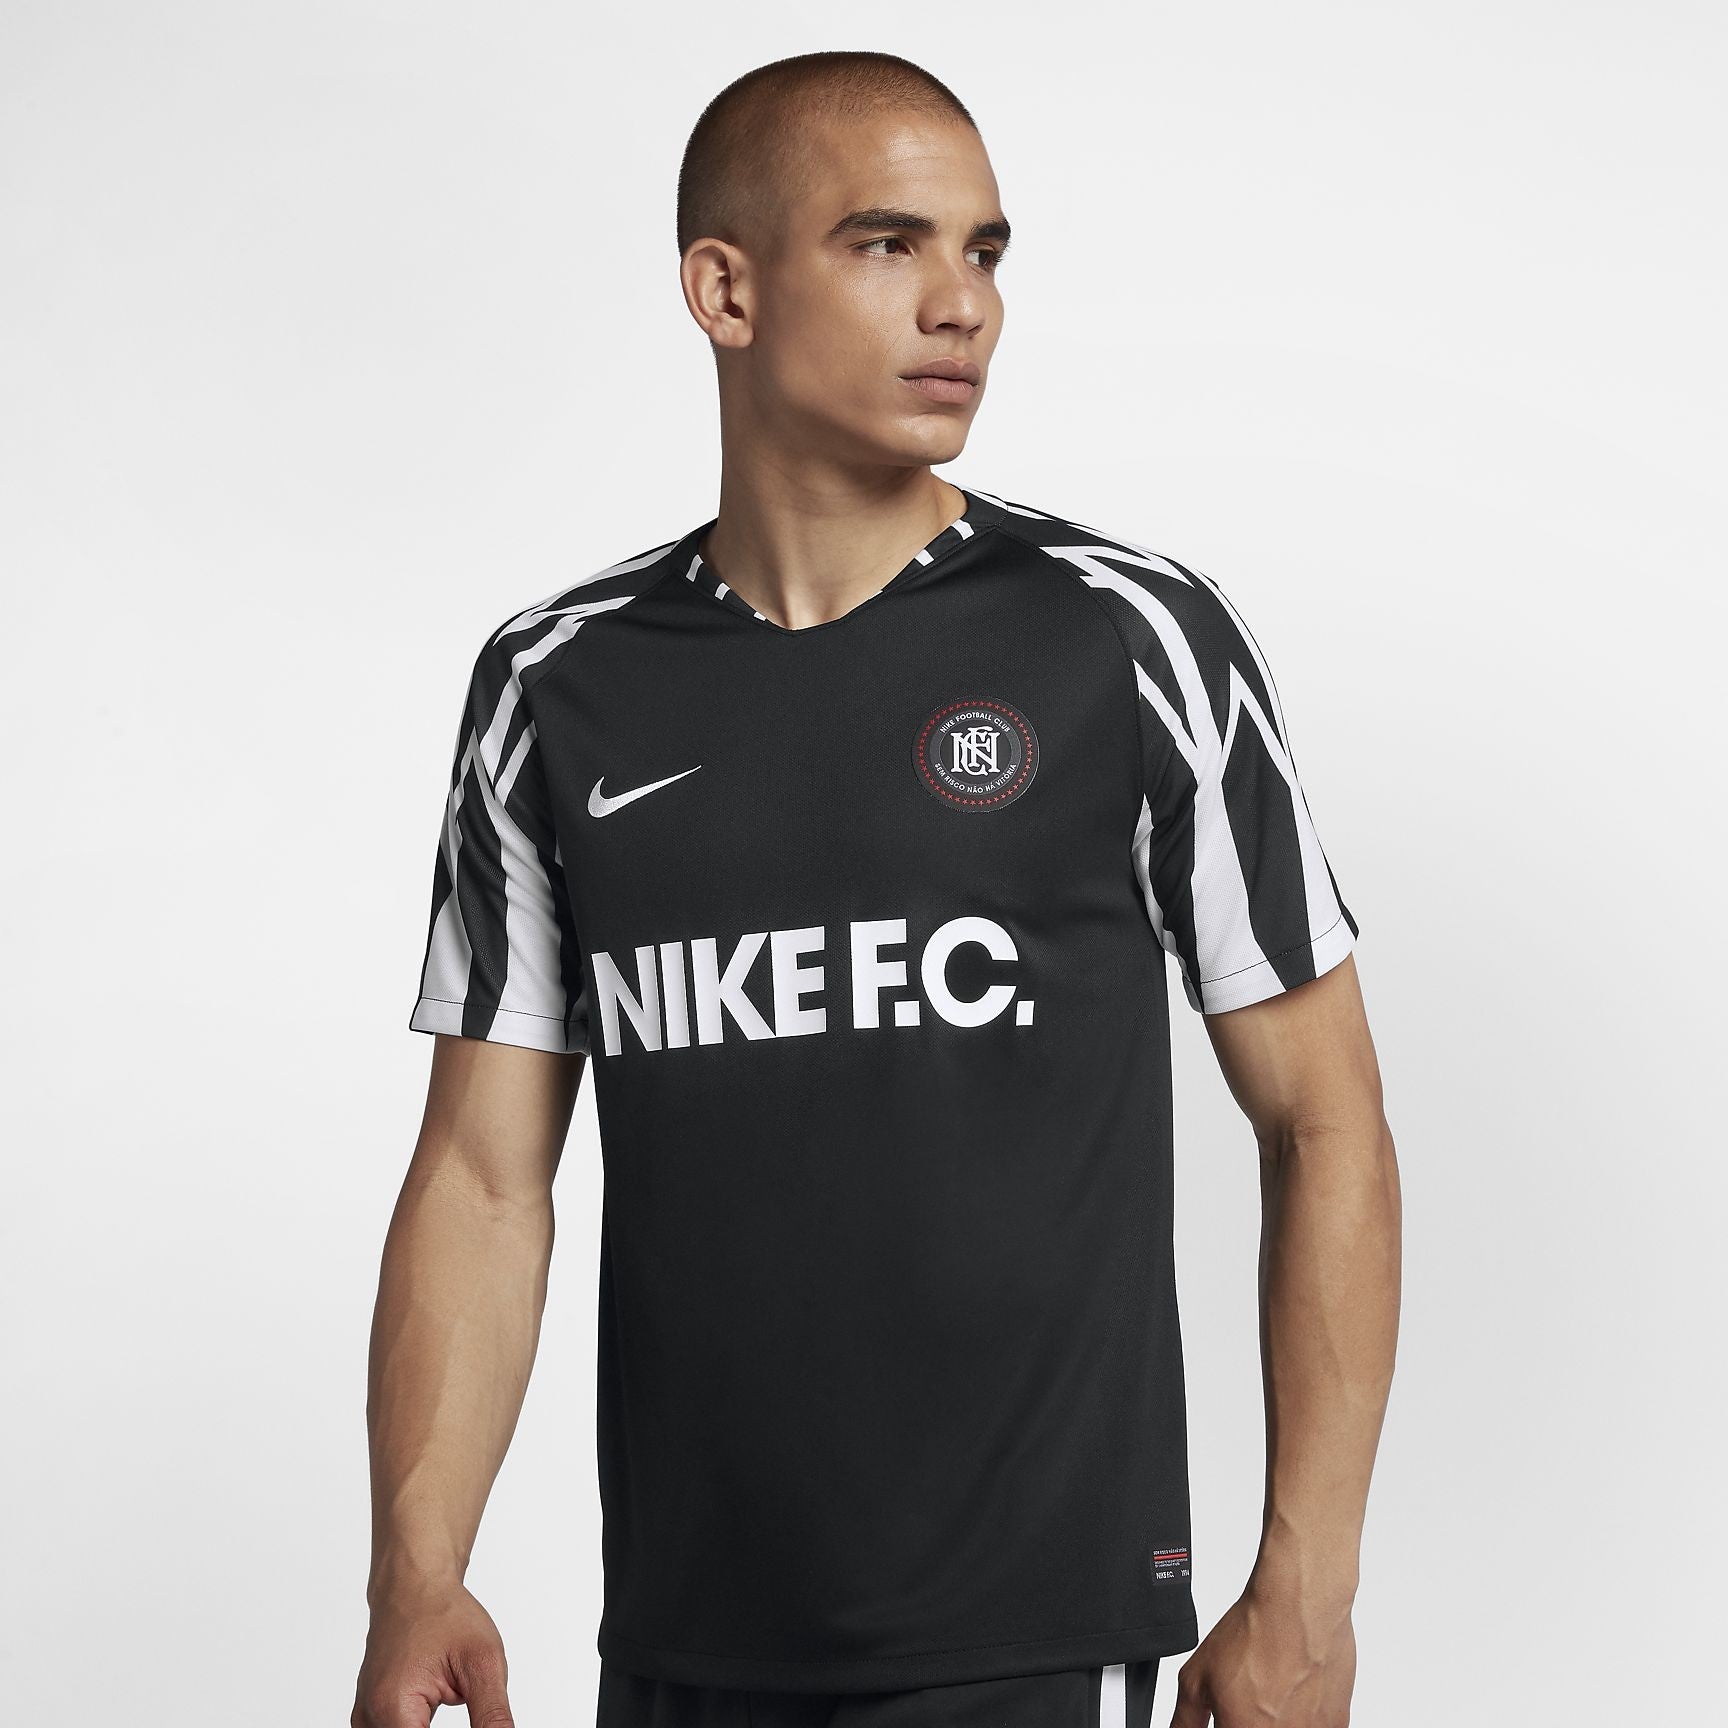 vasteland Delegatie Reinig de vloer Nike F.C. Home Soccer Jersey - Black/White/White